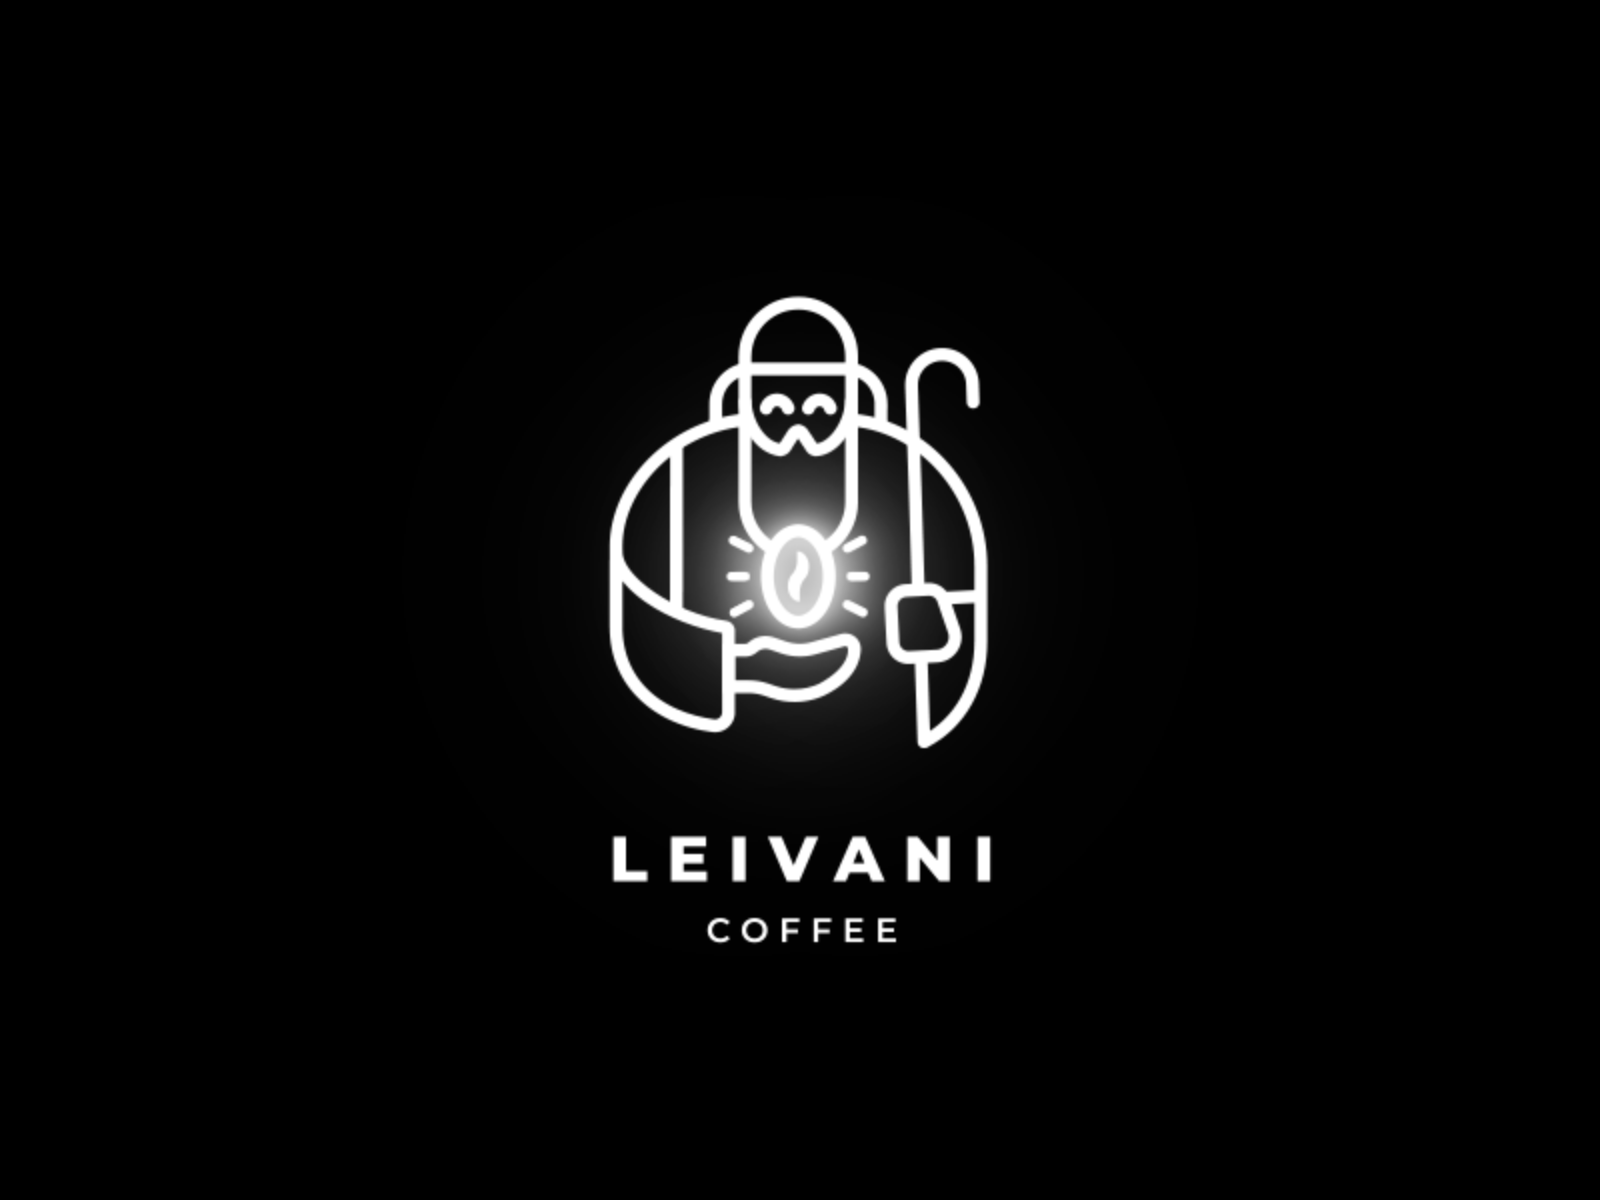 Leivani logo animation after effect animation character character animation coffee coffee bean legend logo animation logo reveal looped shepherd